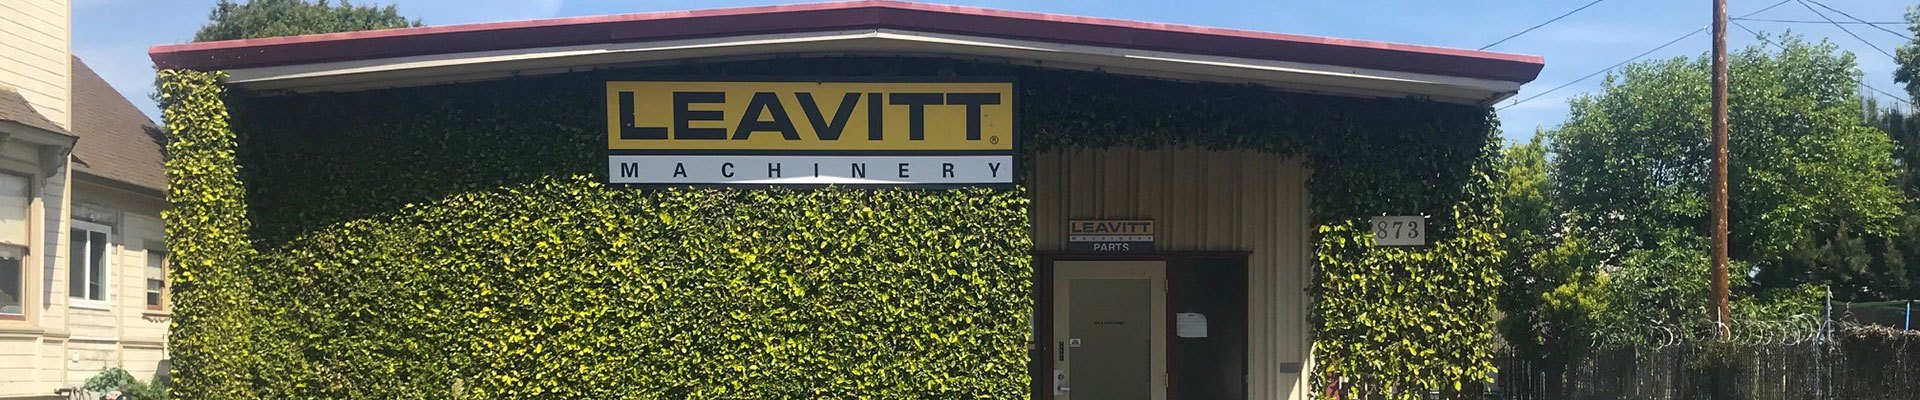 Leavitt Machinery branch in California